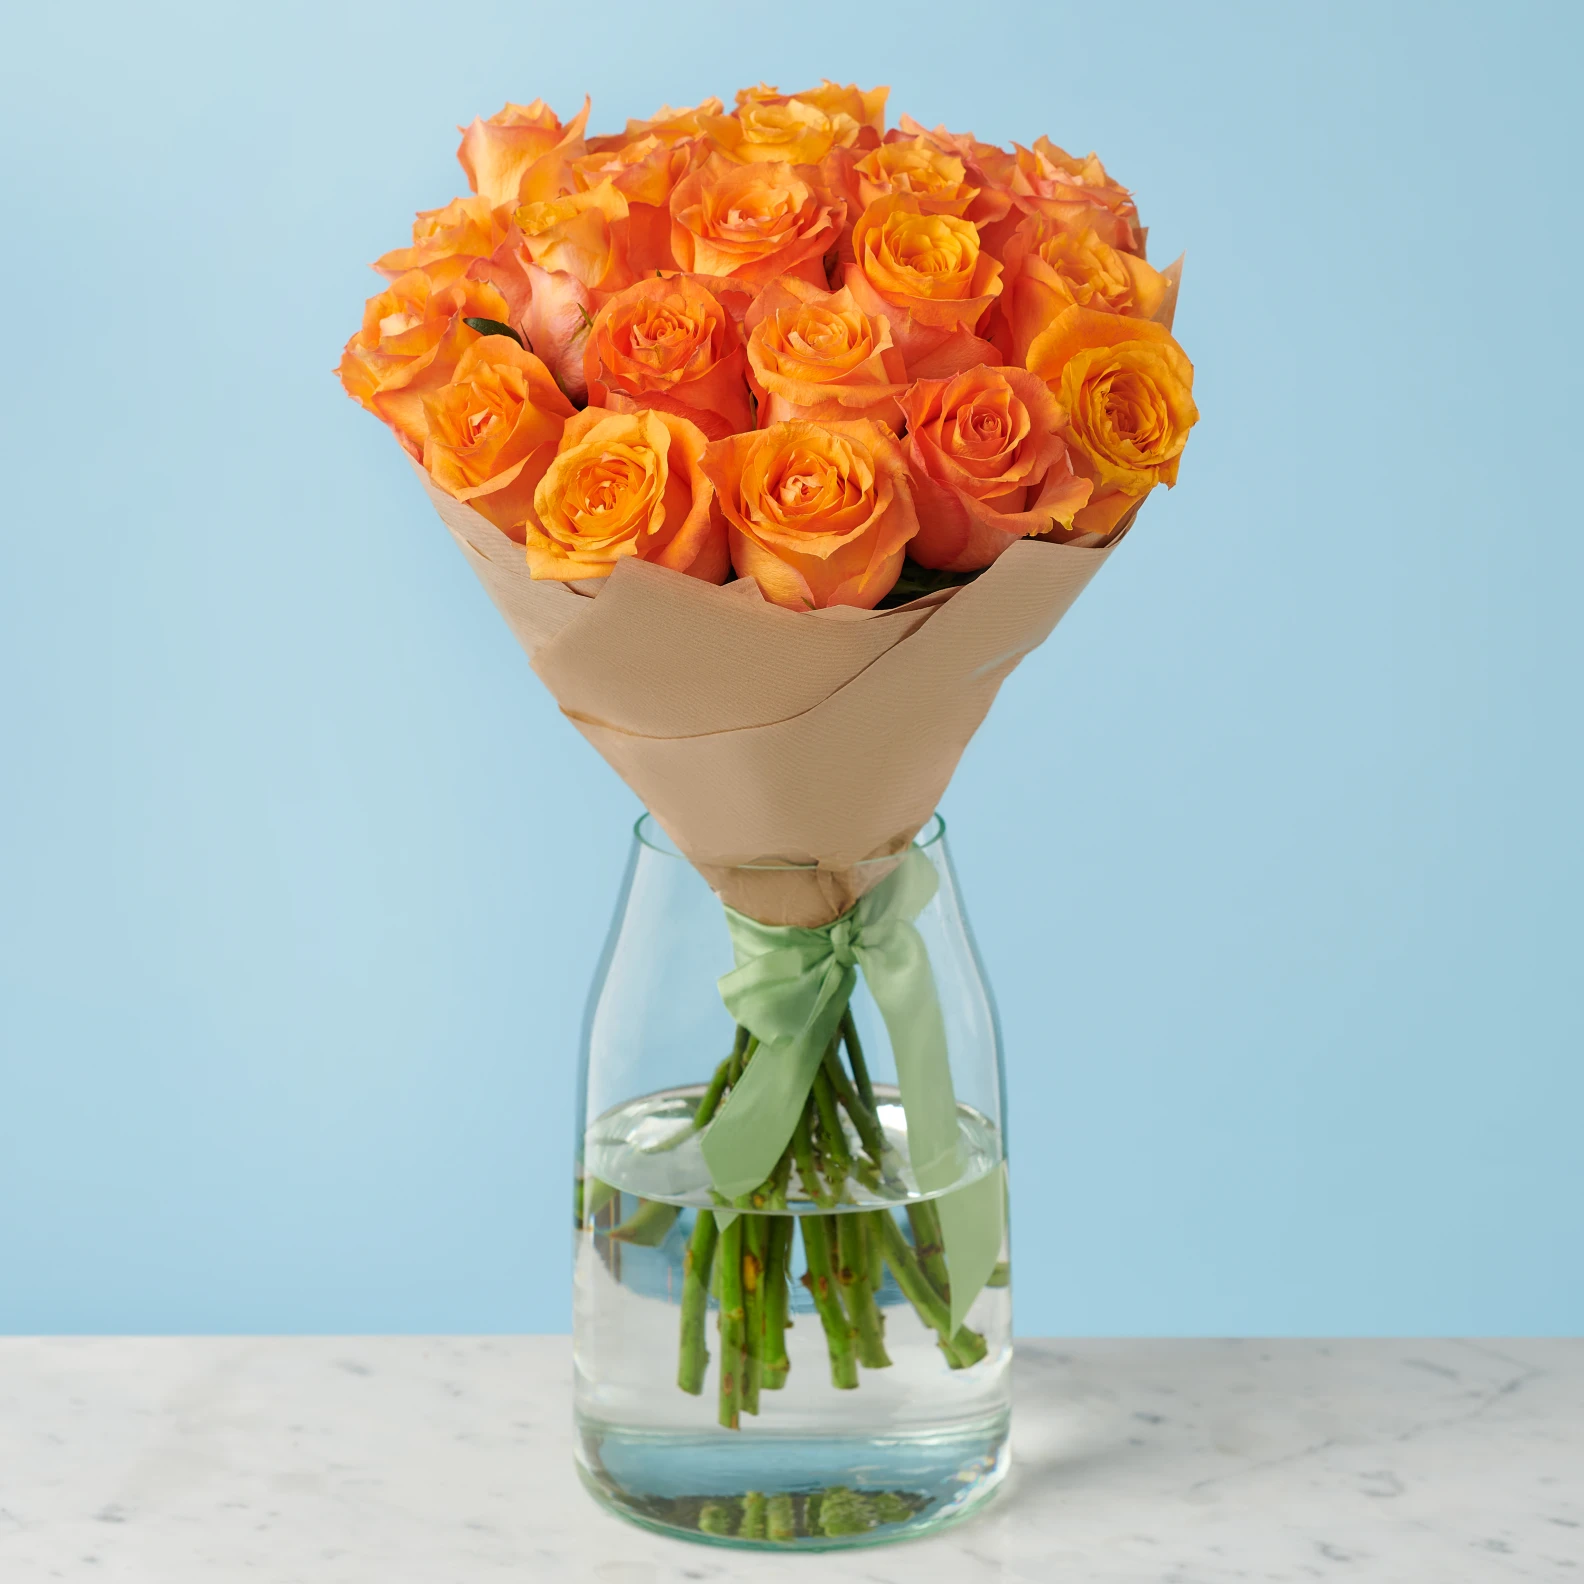 20 Premium Orange Roses - image №3